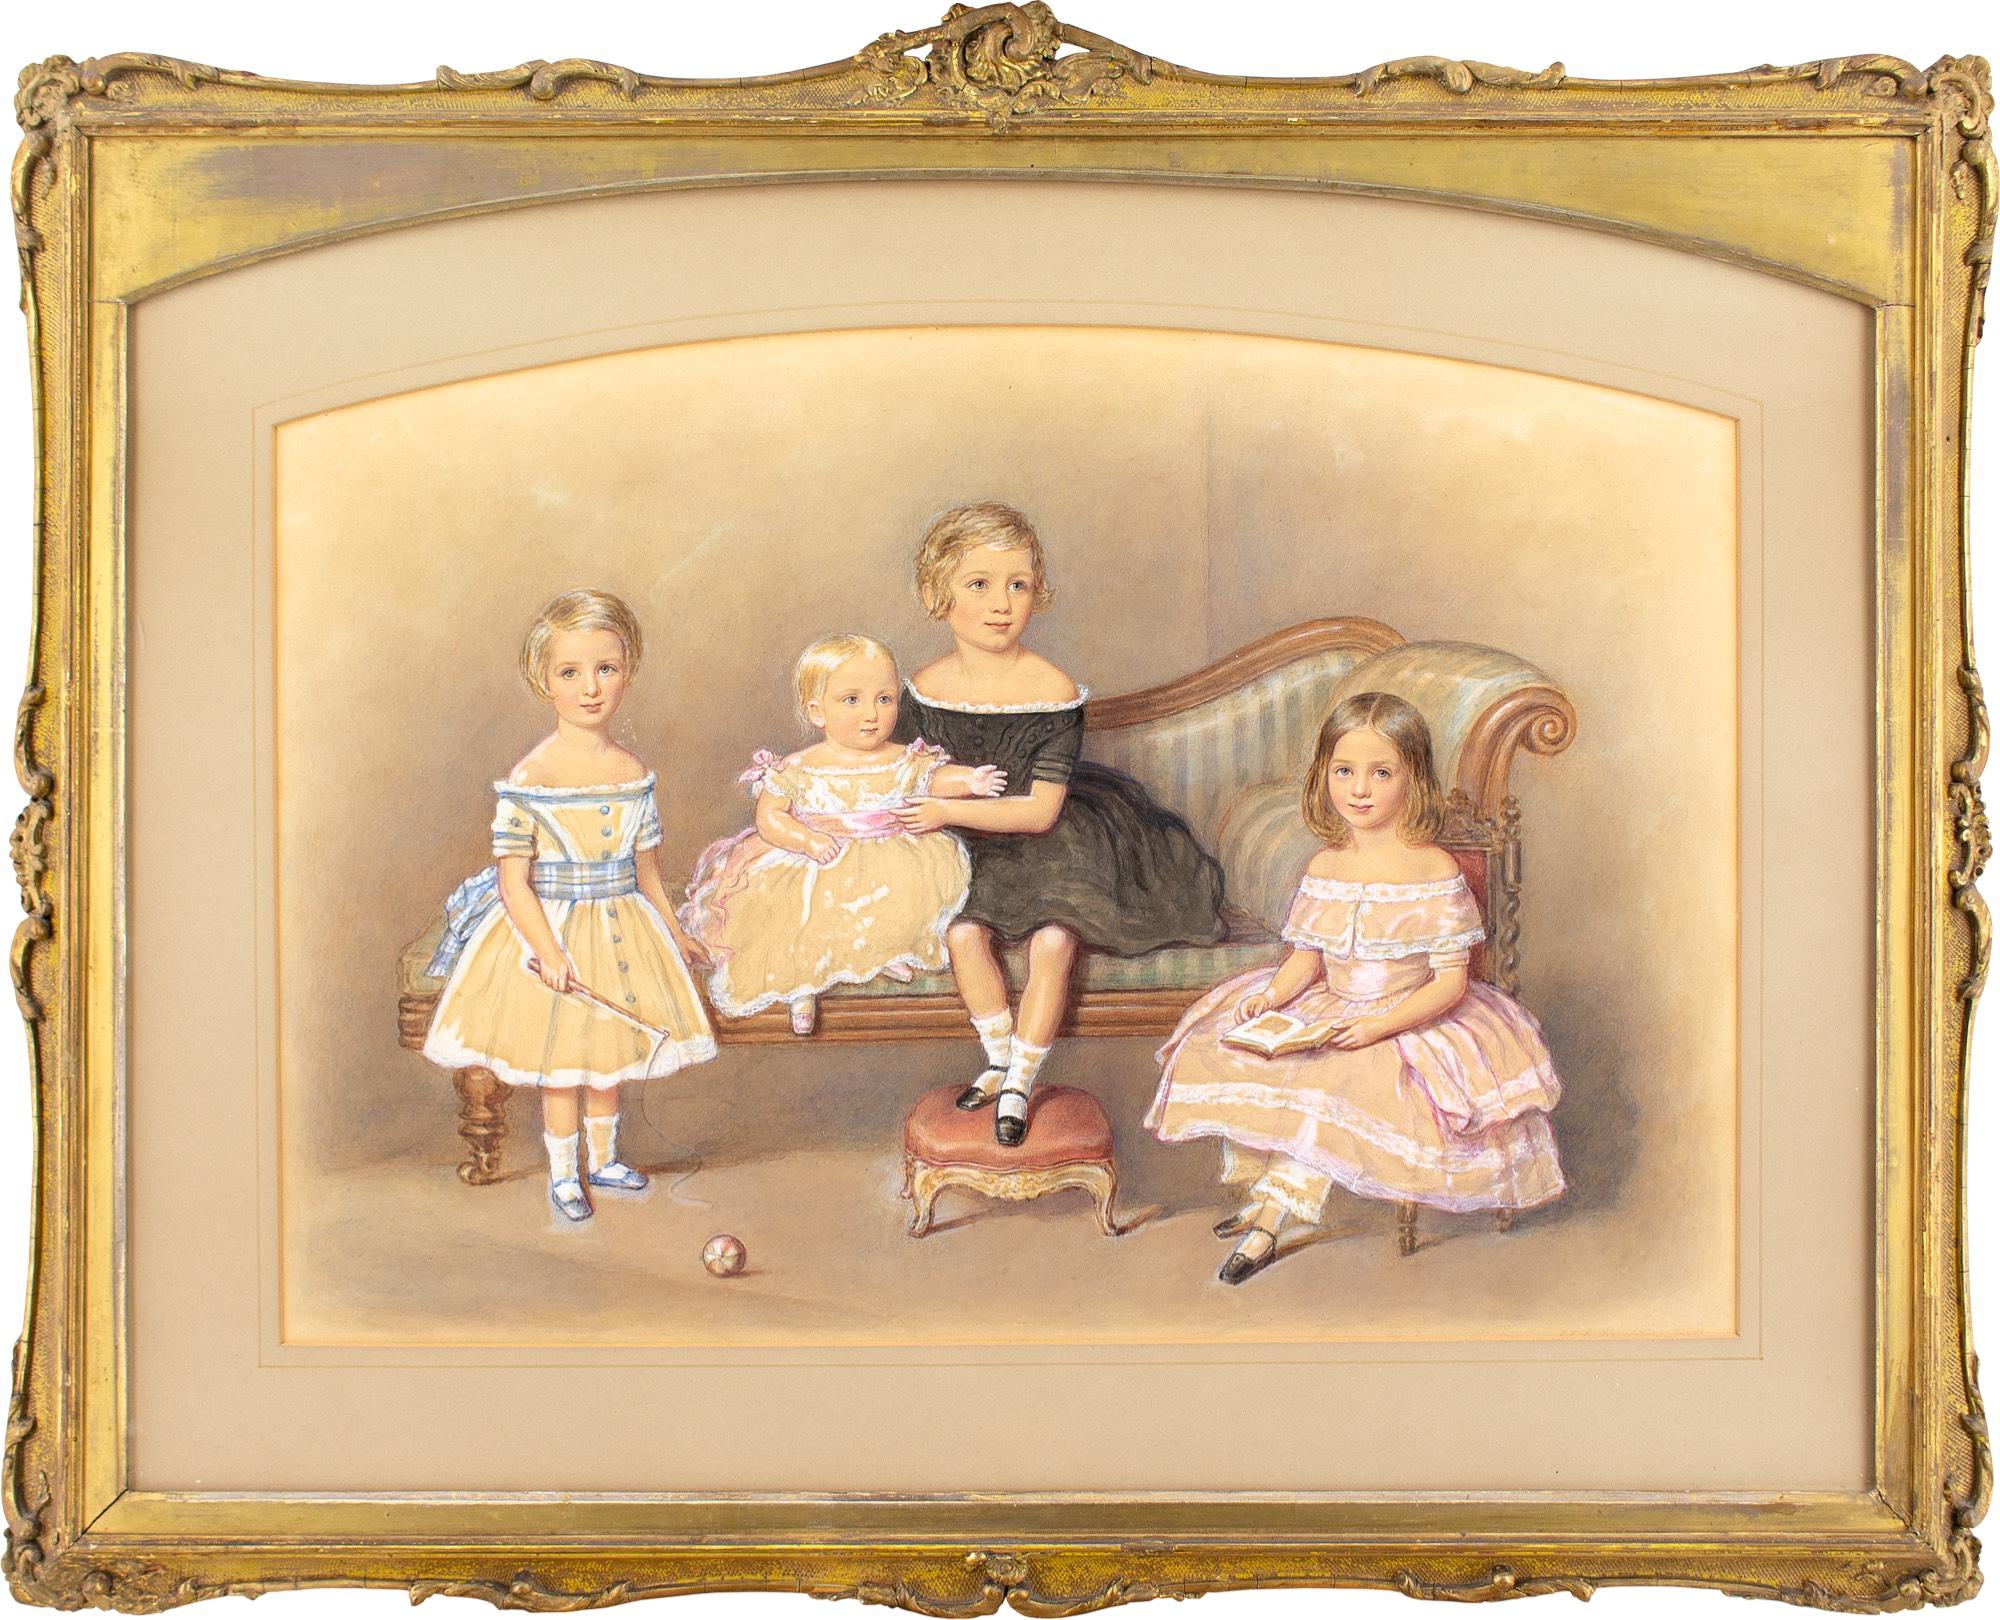 Cette charmante aquarelle du milieu du XIXe siècle de l'artiste britannique John George Indermaur (1818-1862) représente quatre enfants, une chaise longue et un pouf. Elle a été présentée à la Société royale des artistes britanniques en